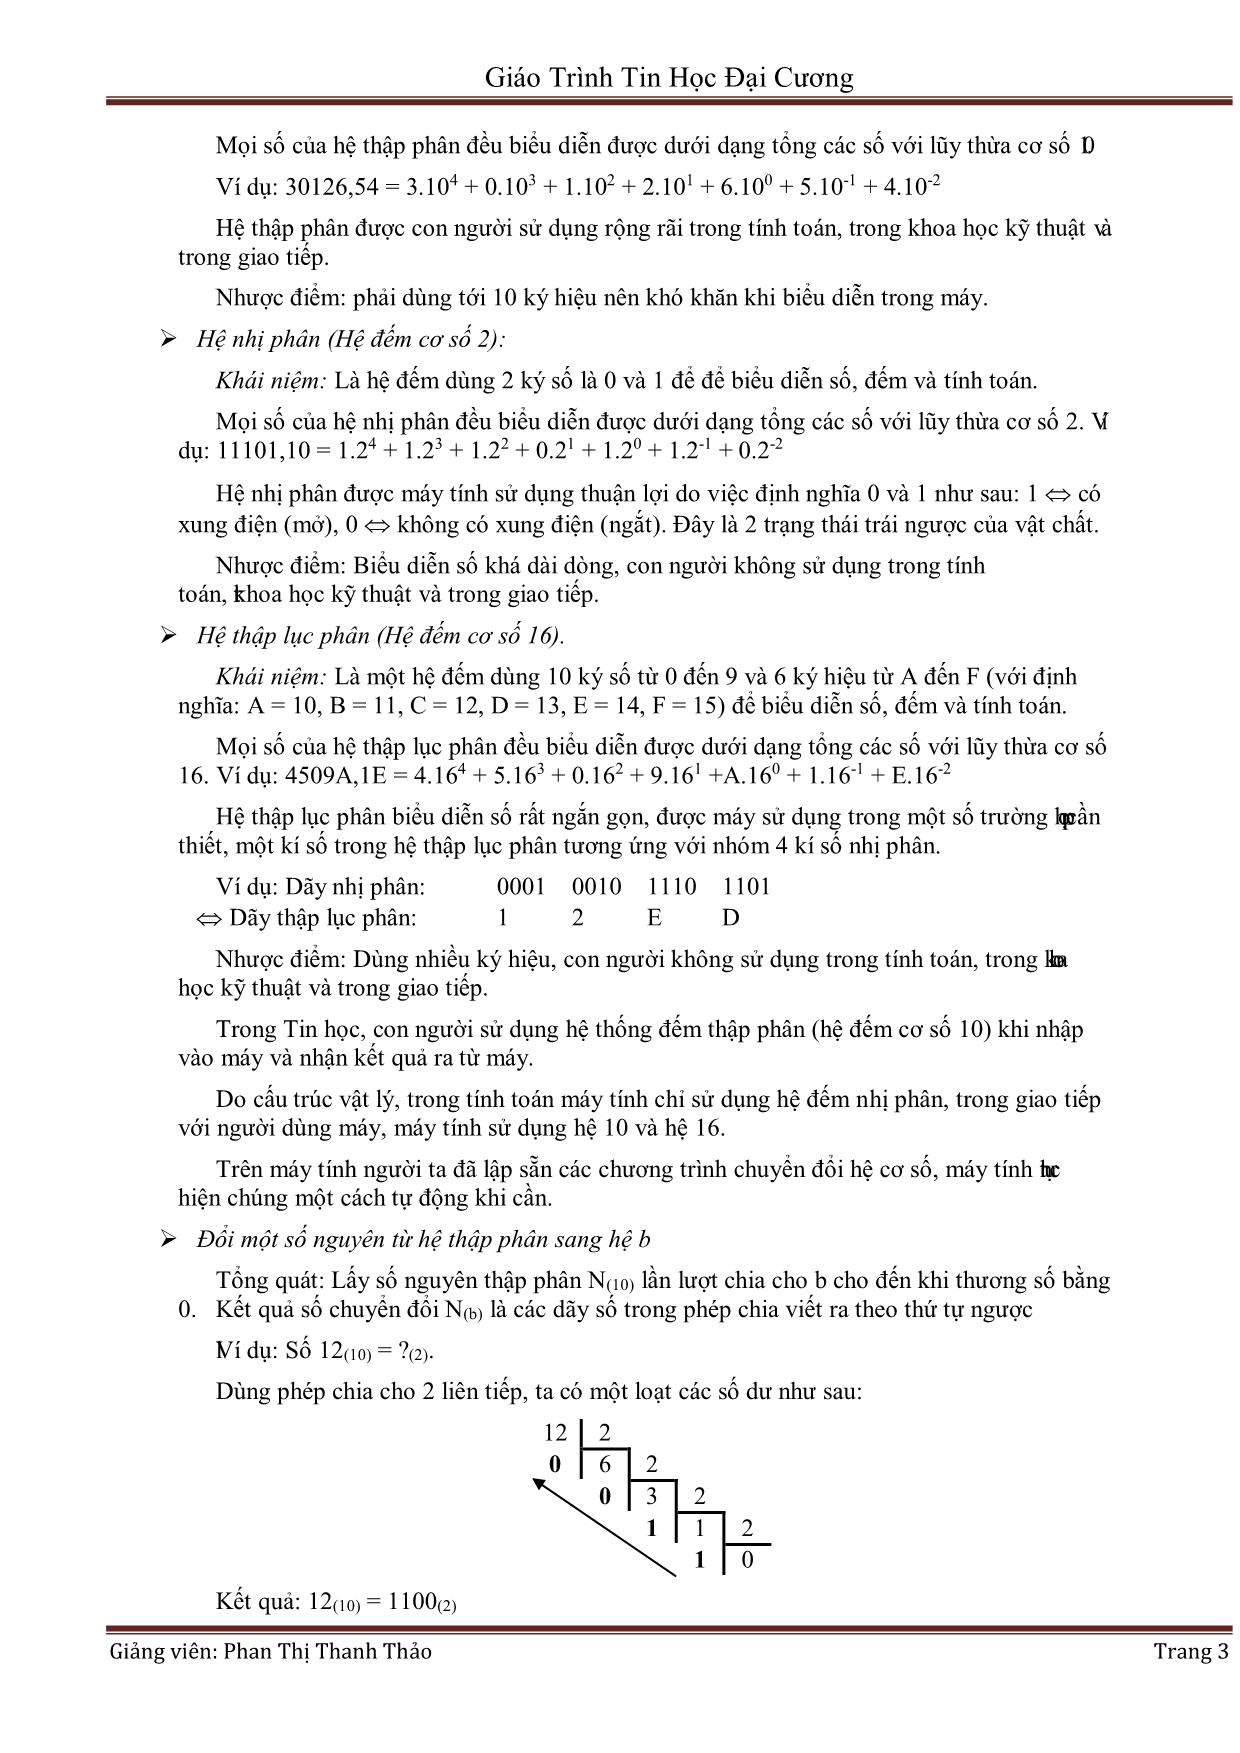 Giáo trình Tin học đại cương (Phần 1) - Phan Thị Thanh Thảo trang 3